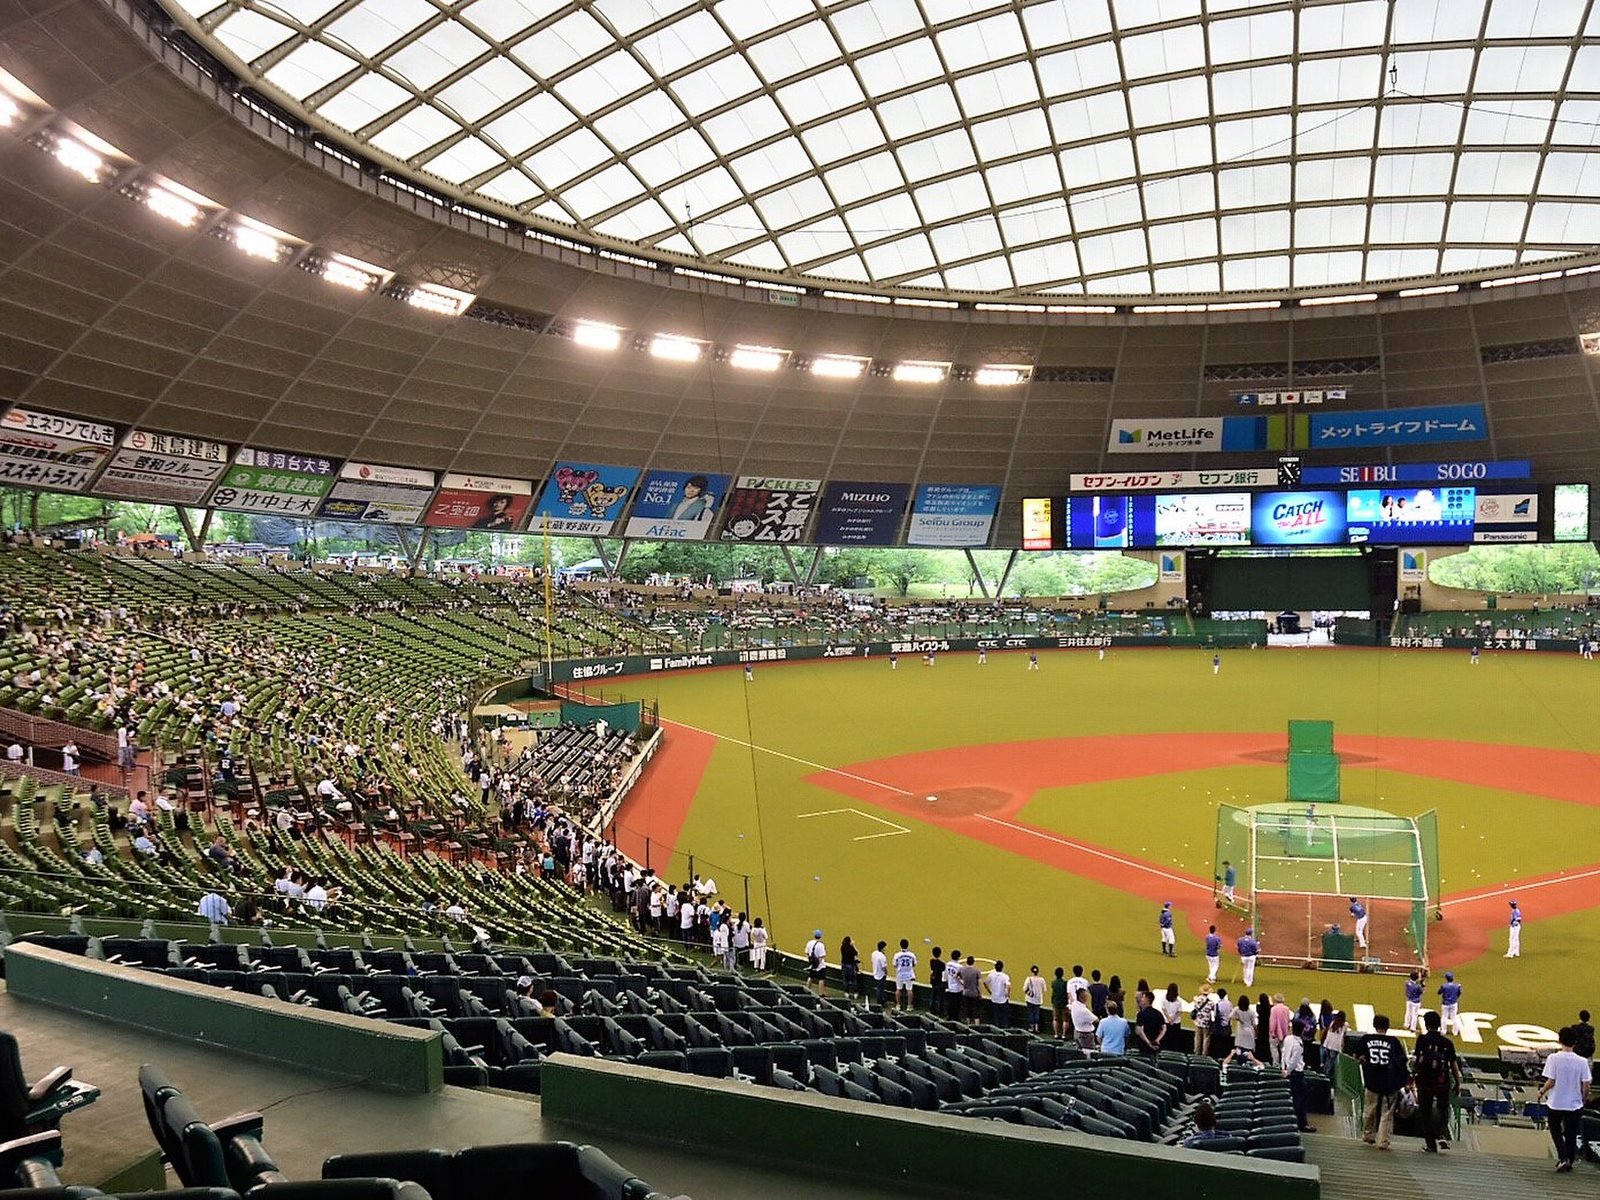 想像を超えた 楽しすぎる野球場 埼玉のメットライフドーム で女子会をしよう Playlife プレイライフ